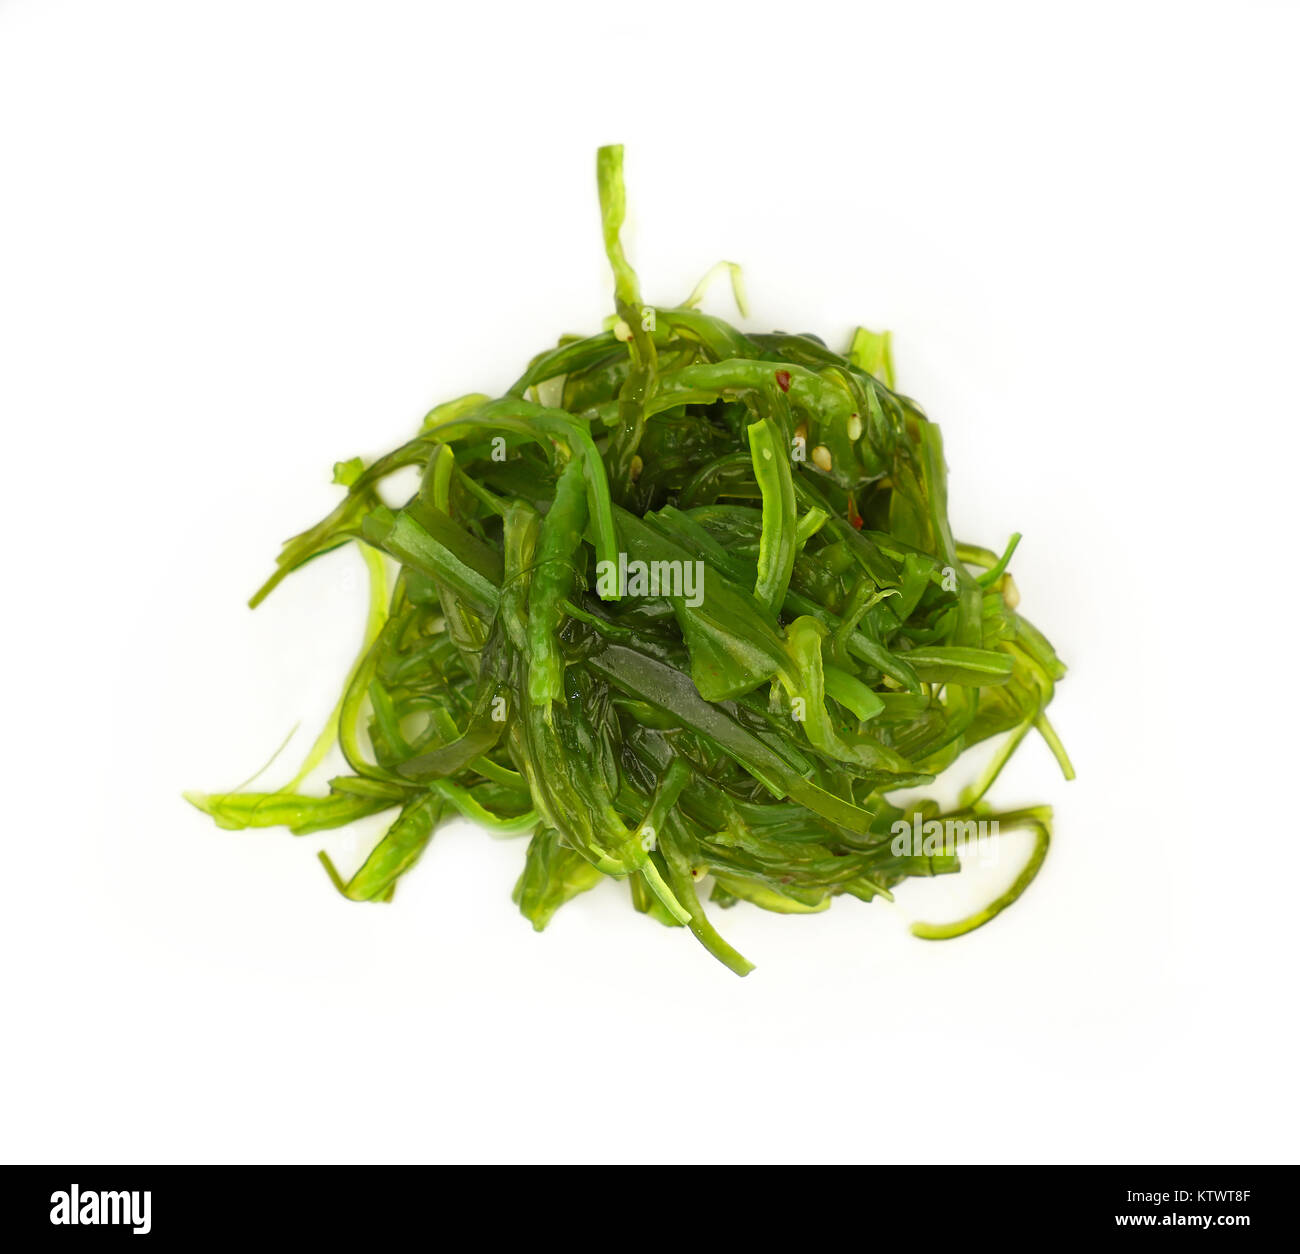 Vicino la porzione di verde alghe wakame salad isolati su sfondo bianco, elevati vista dall'alto, direttamente al di sopra di Foto Stock